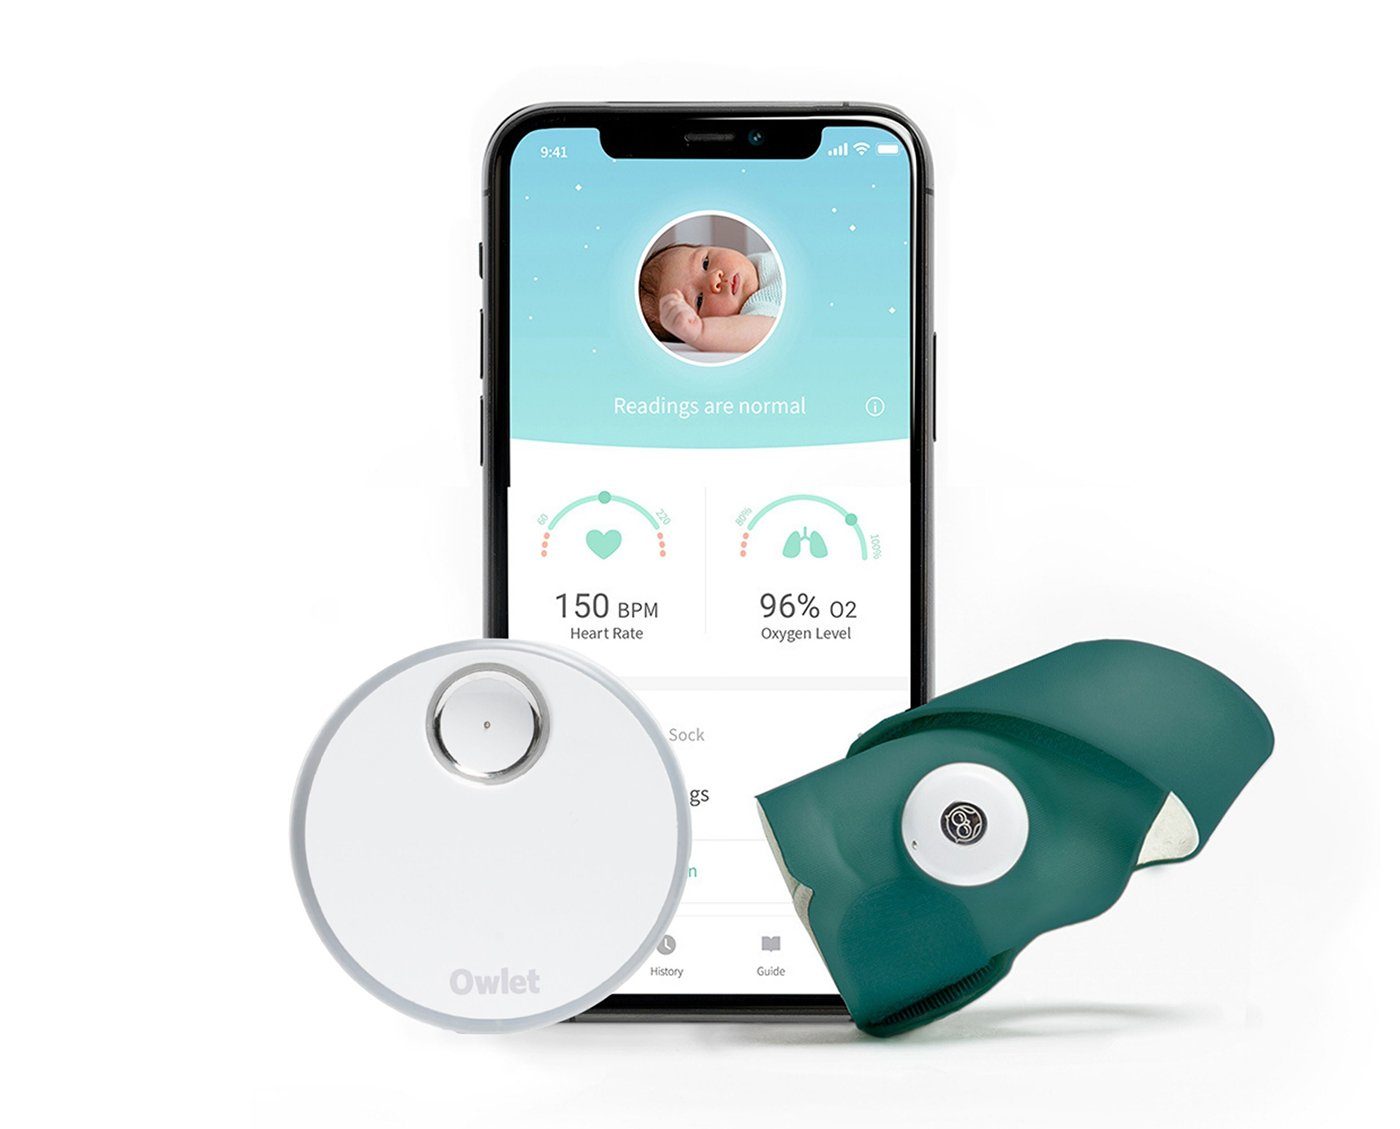 und Tiefseegrün Owlet Babyphone, Care Sock, Smart Baby Sauerstoffmessung Puls- - 3 DE Sock Smart